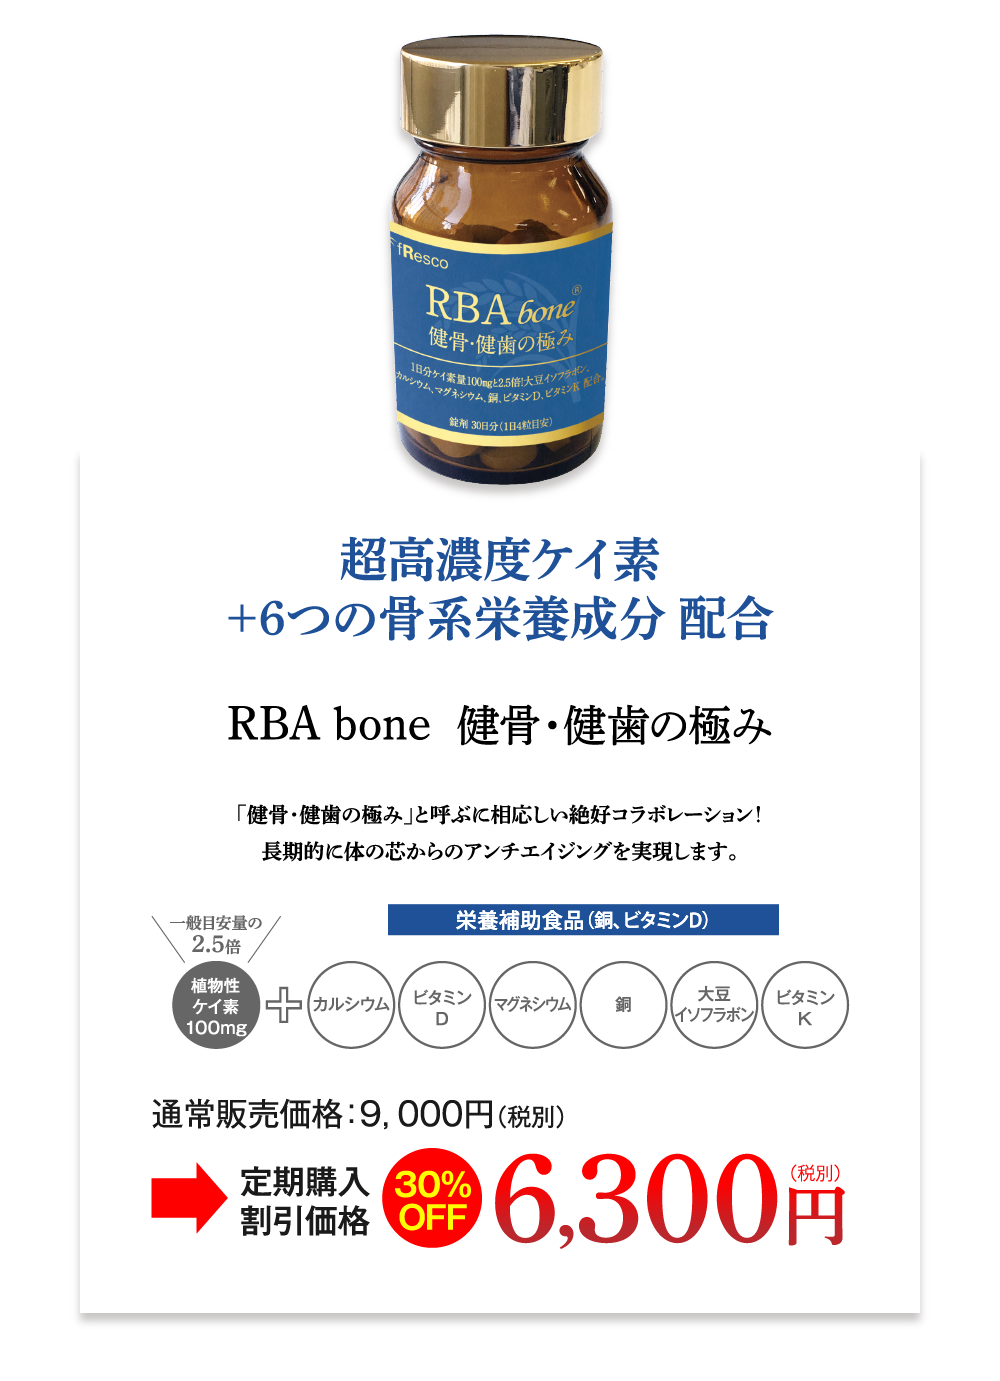 RBA Bone商品情報